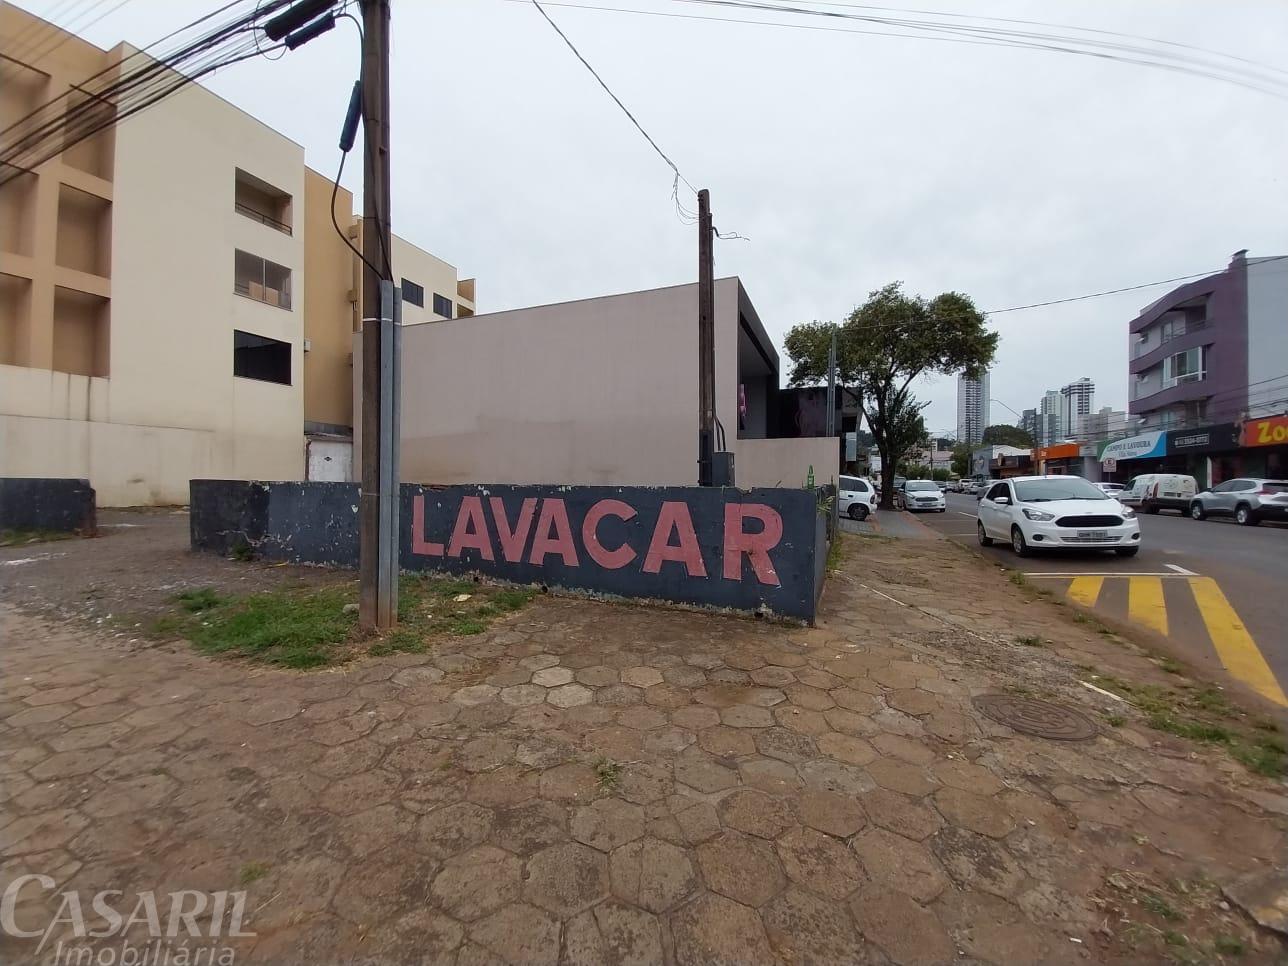 Terreno Comercial Para Locação, Vila Nova, Francisco Beltrao - Pr